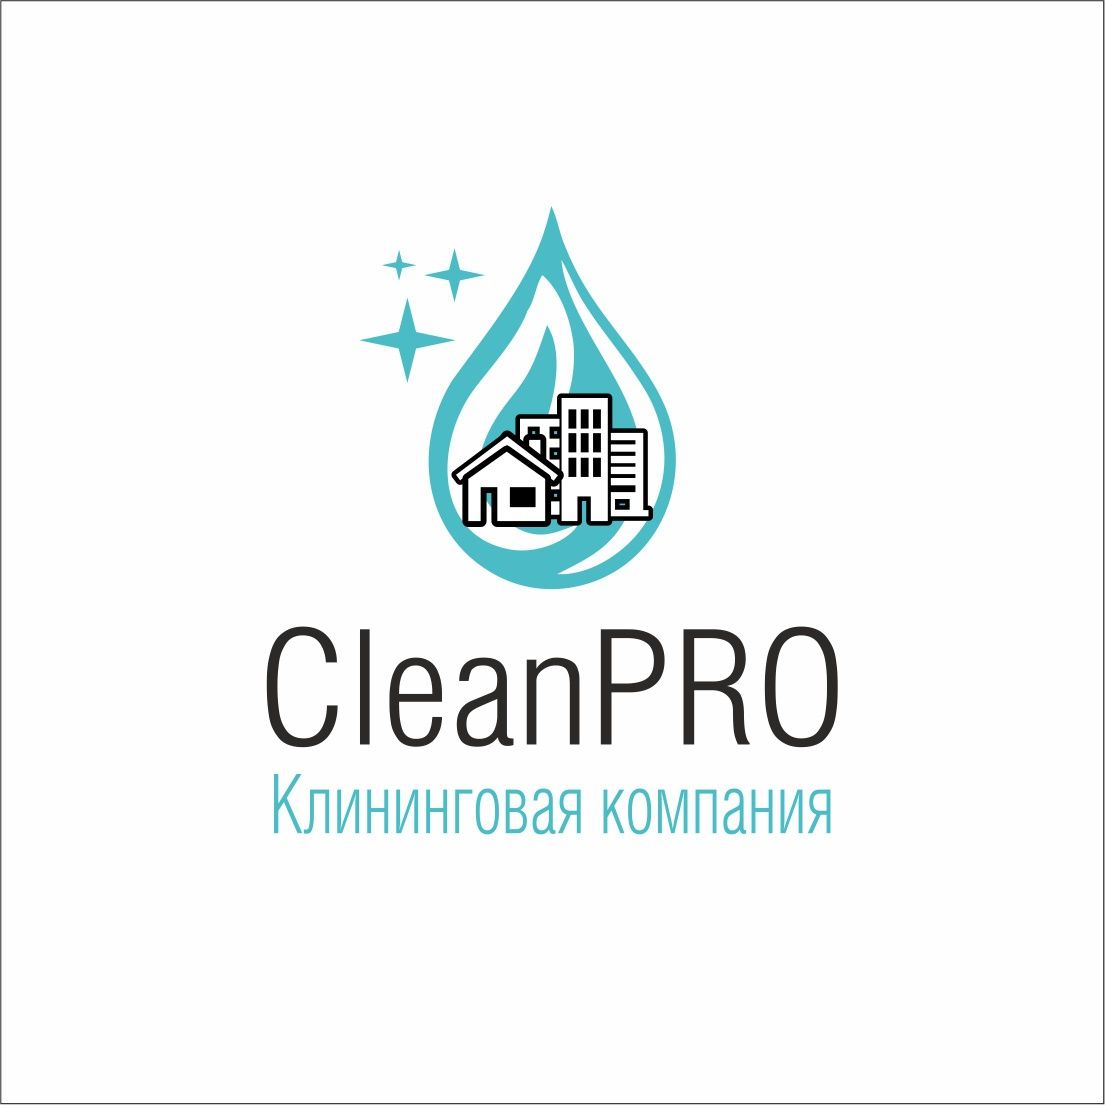 CleanPRO клининговая компания, уборка, чистка